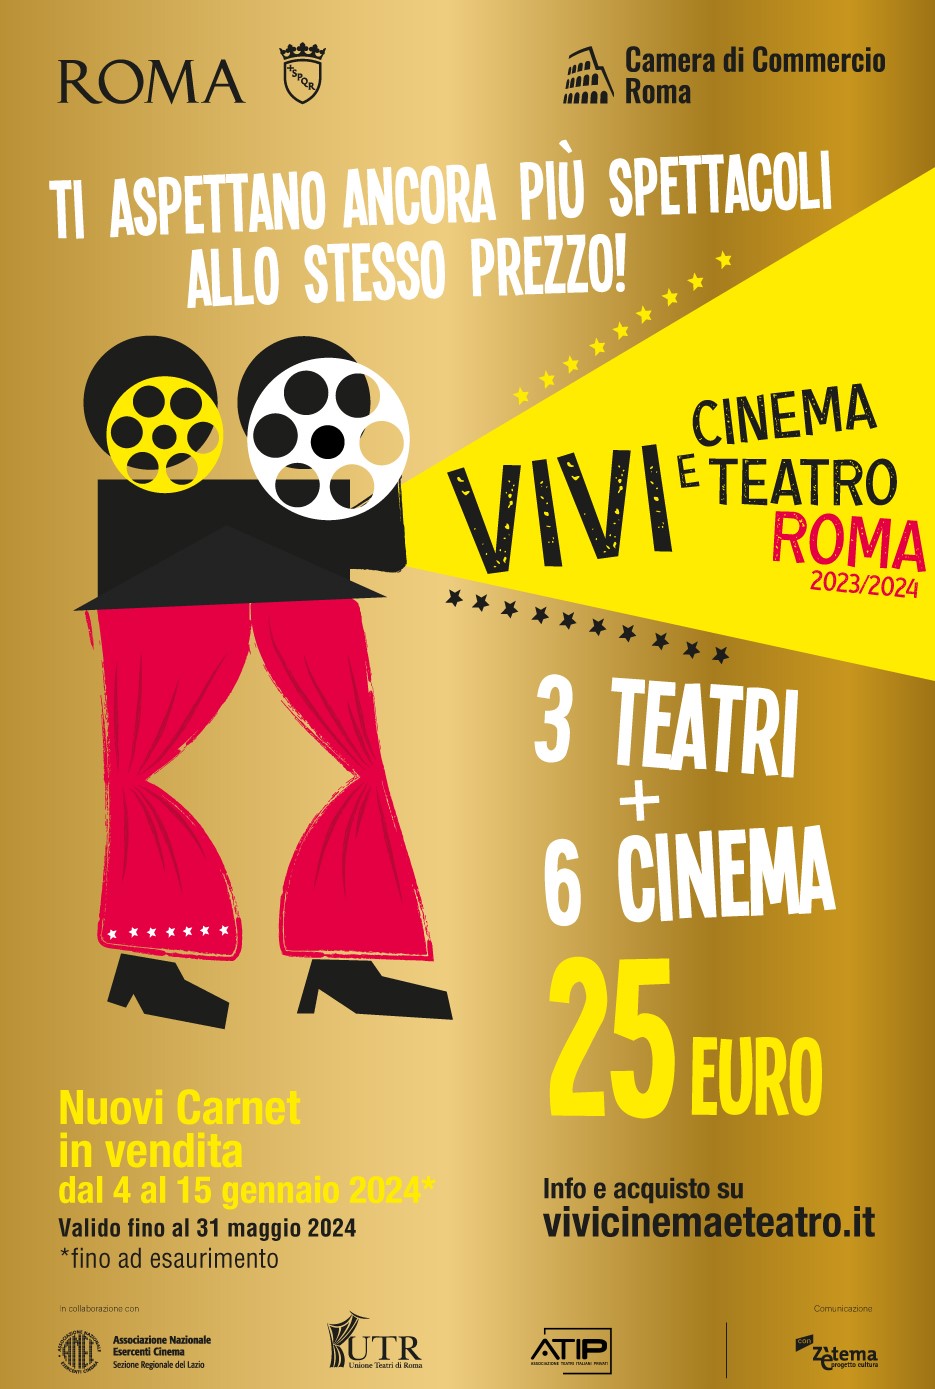 ViviCinema&Teatro Roma 2023/2024: in vendita i nuovi Carnet